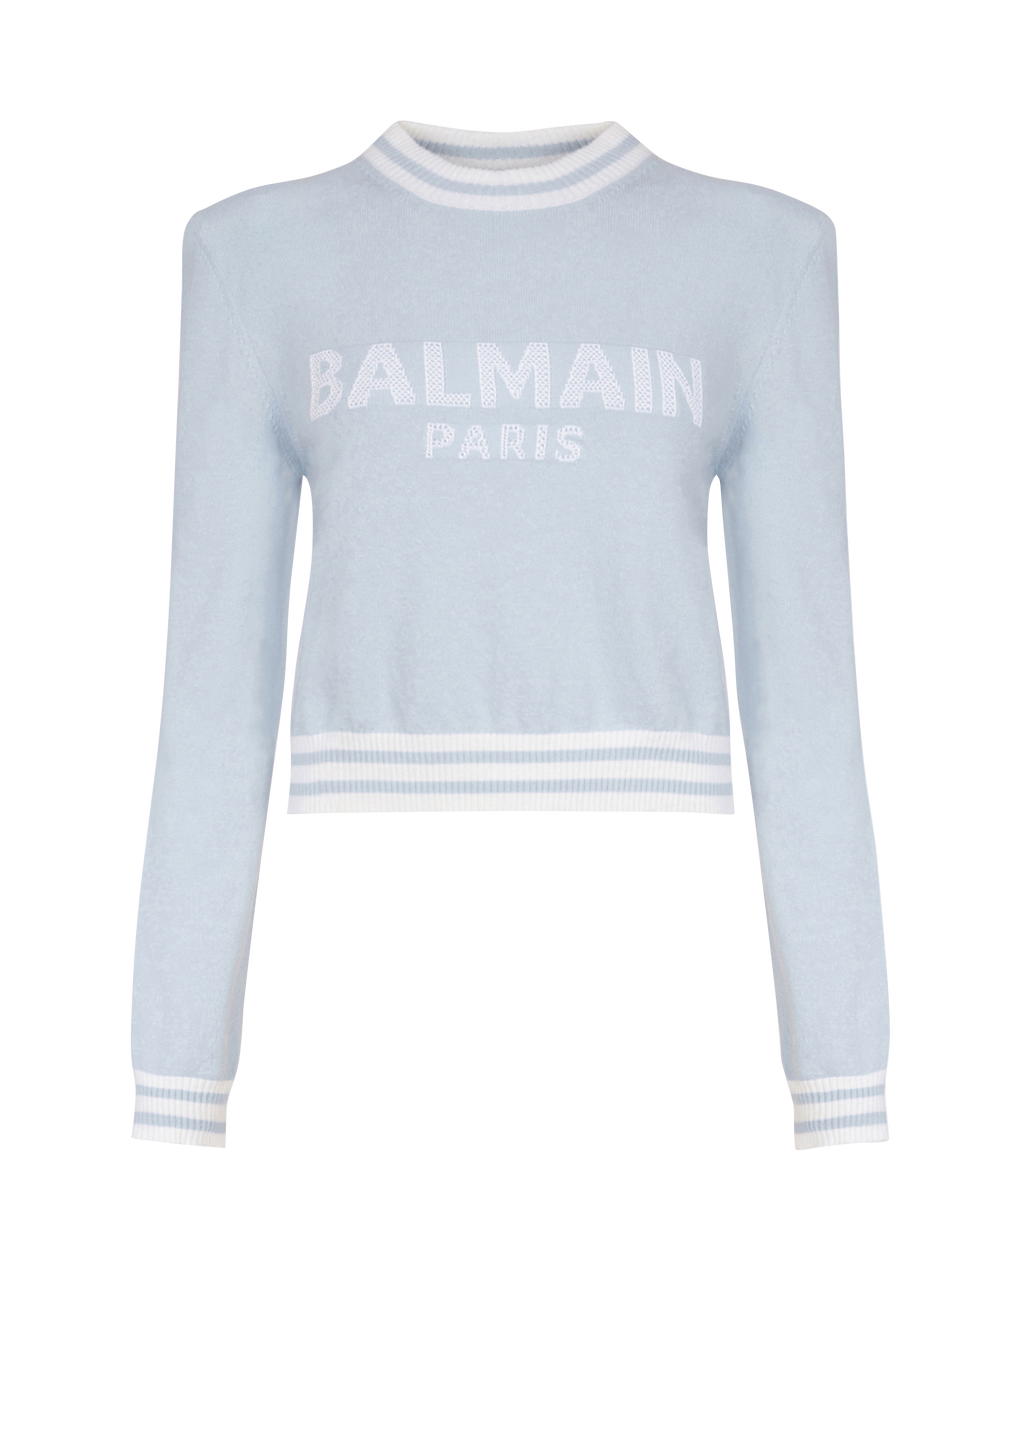 Cropped wool sweatshirt with Balmain logo, blue, hi-res